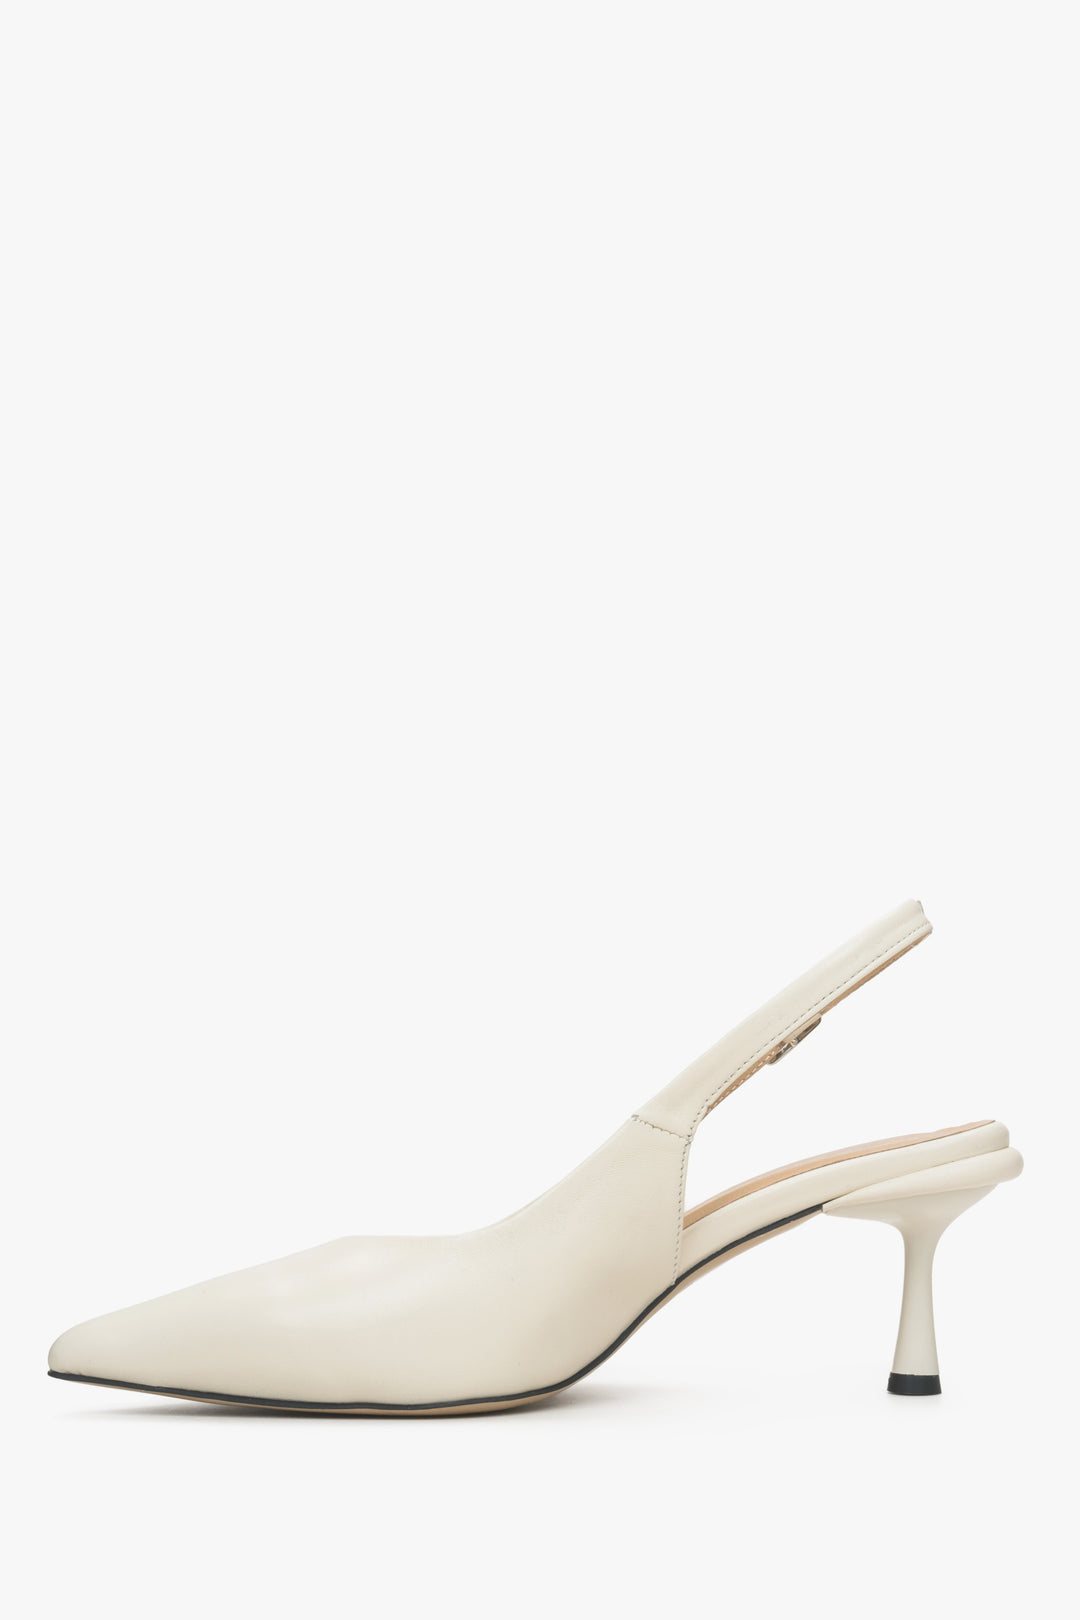 Skórzane białe buty damskie typu slingback Estro - profil buta.